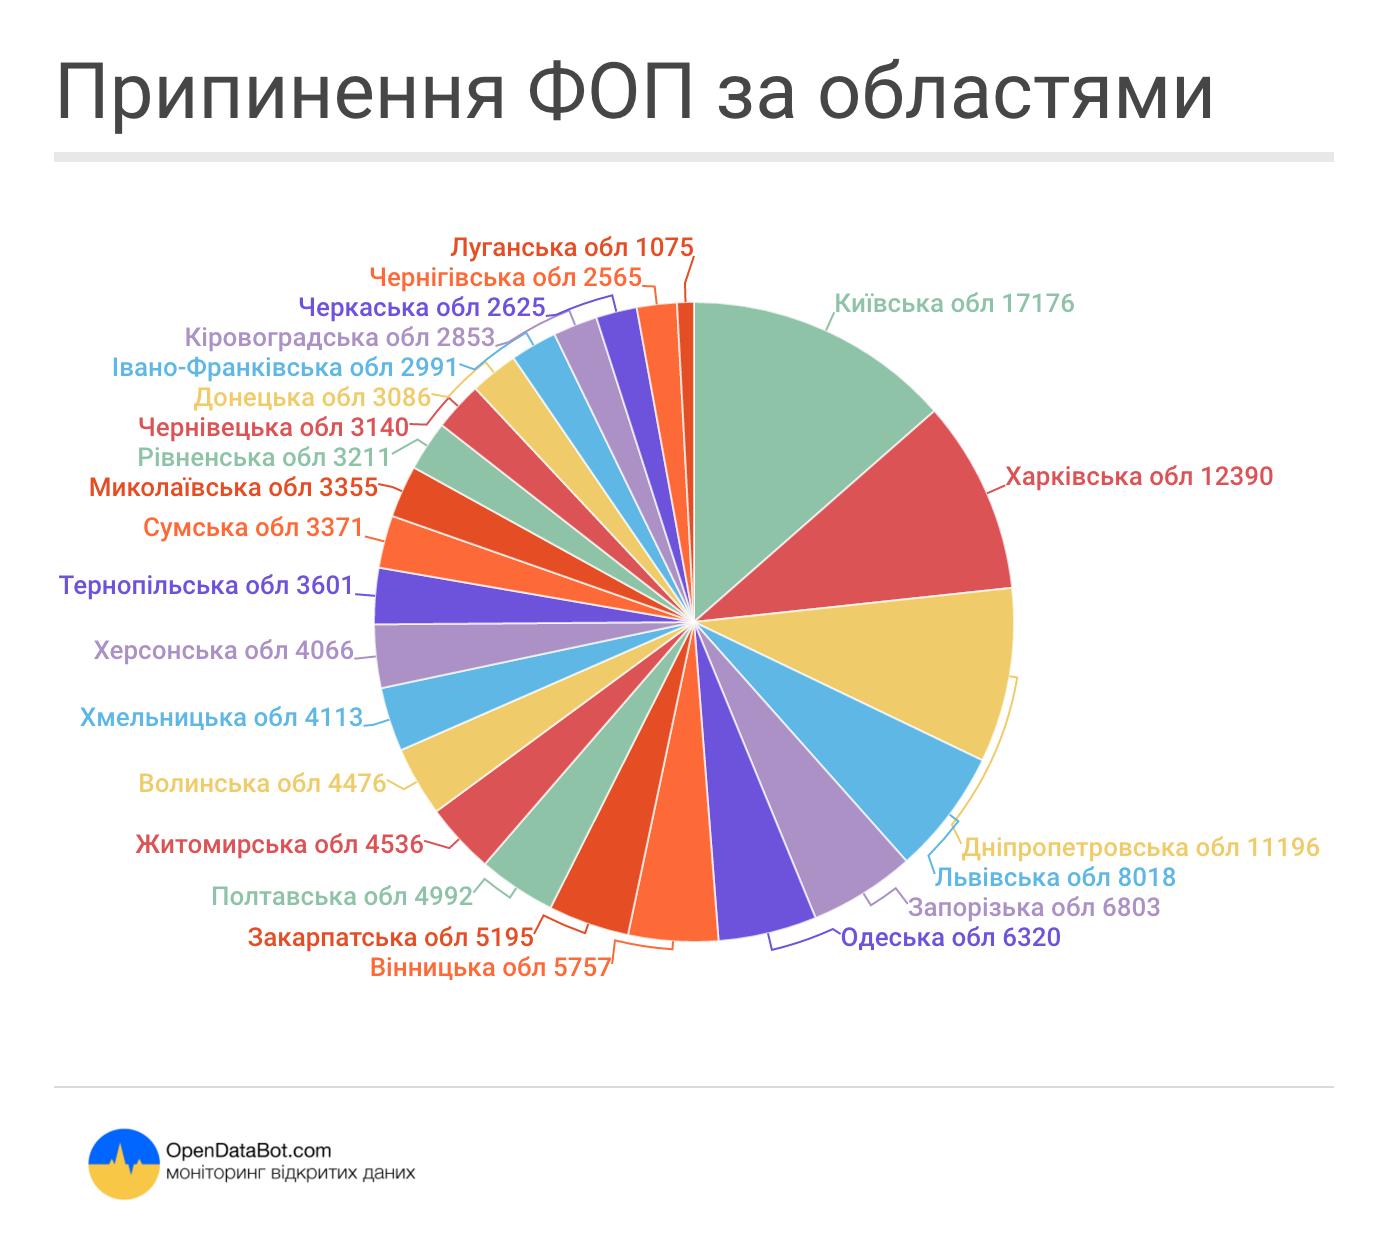 Найбільше в Київській (17 176), Харківській (12 390) та Дніпропетровській (11 196) областях